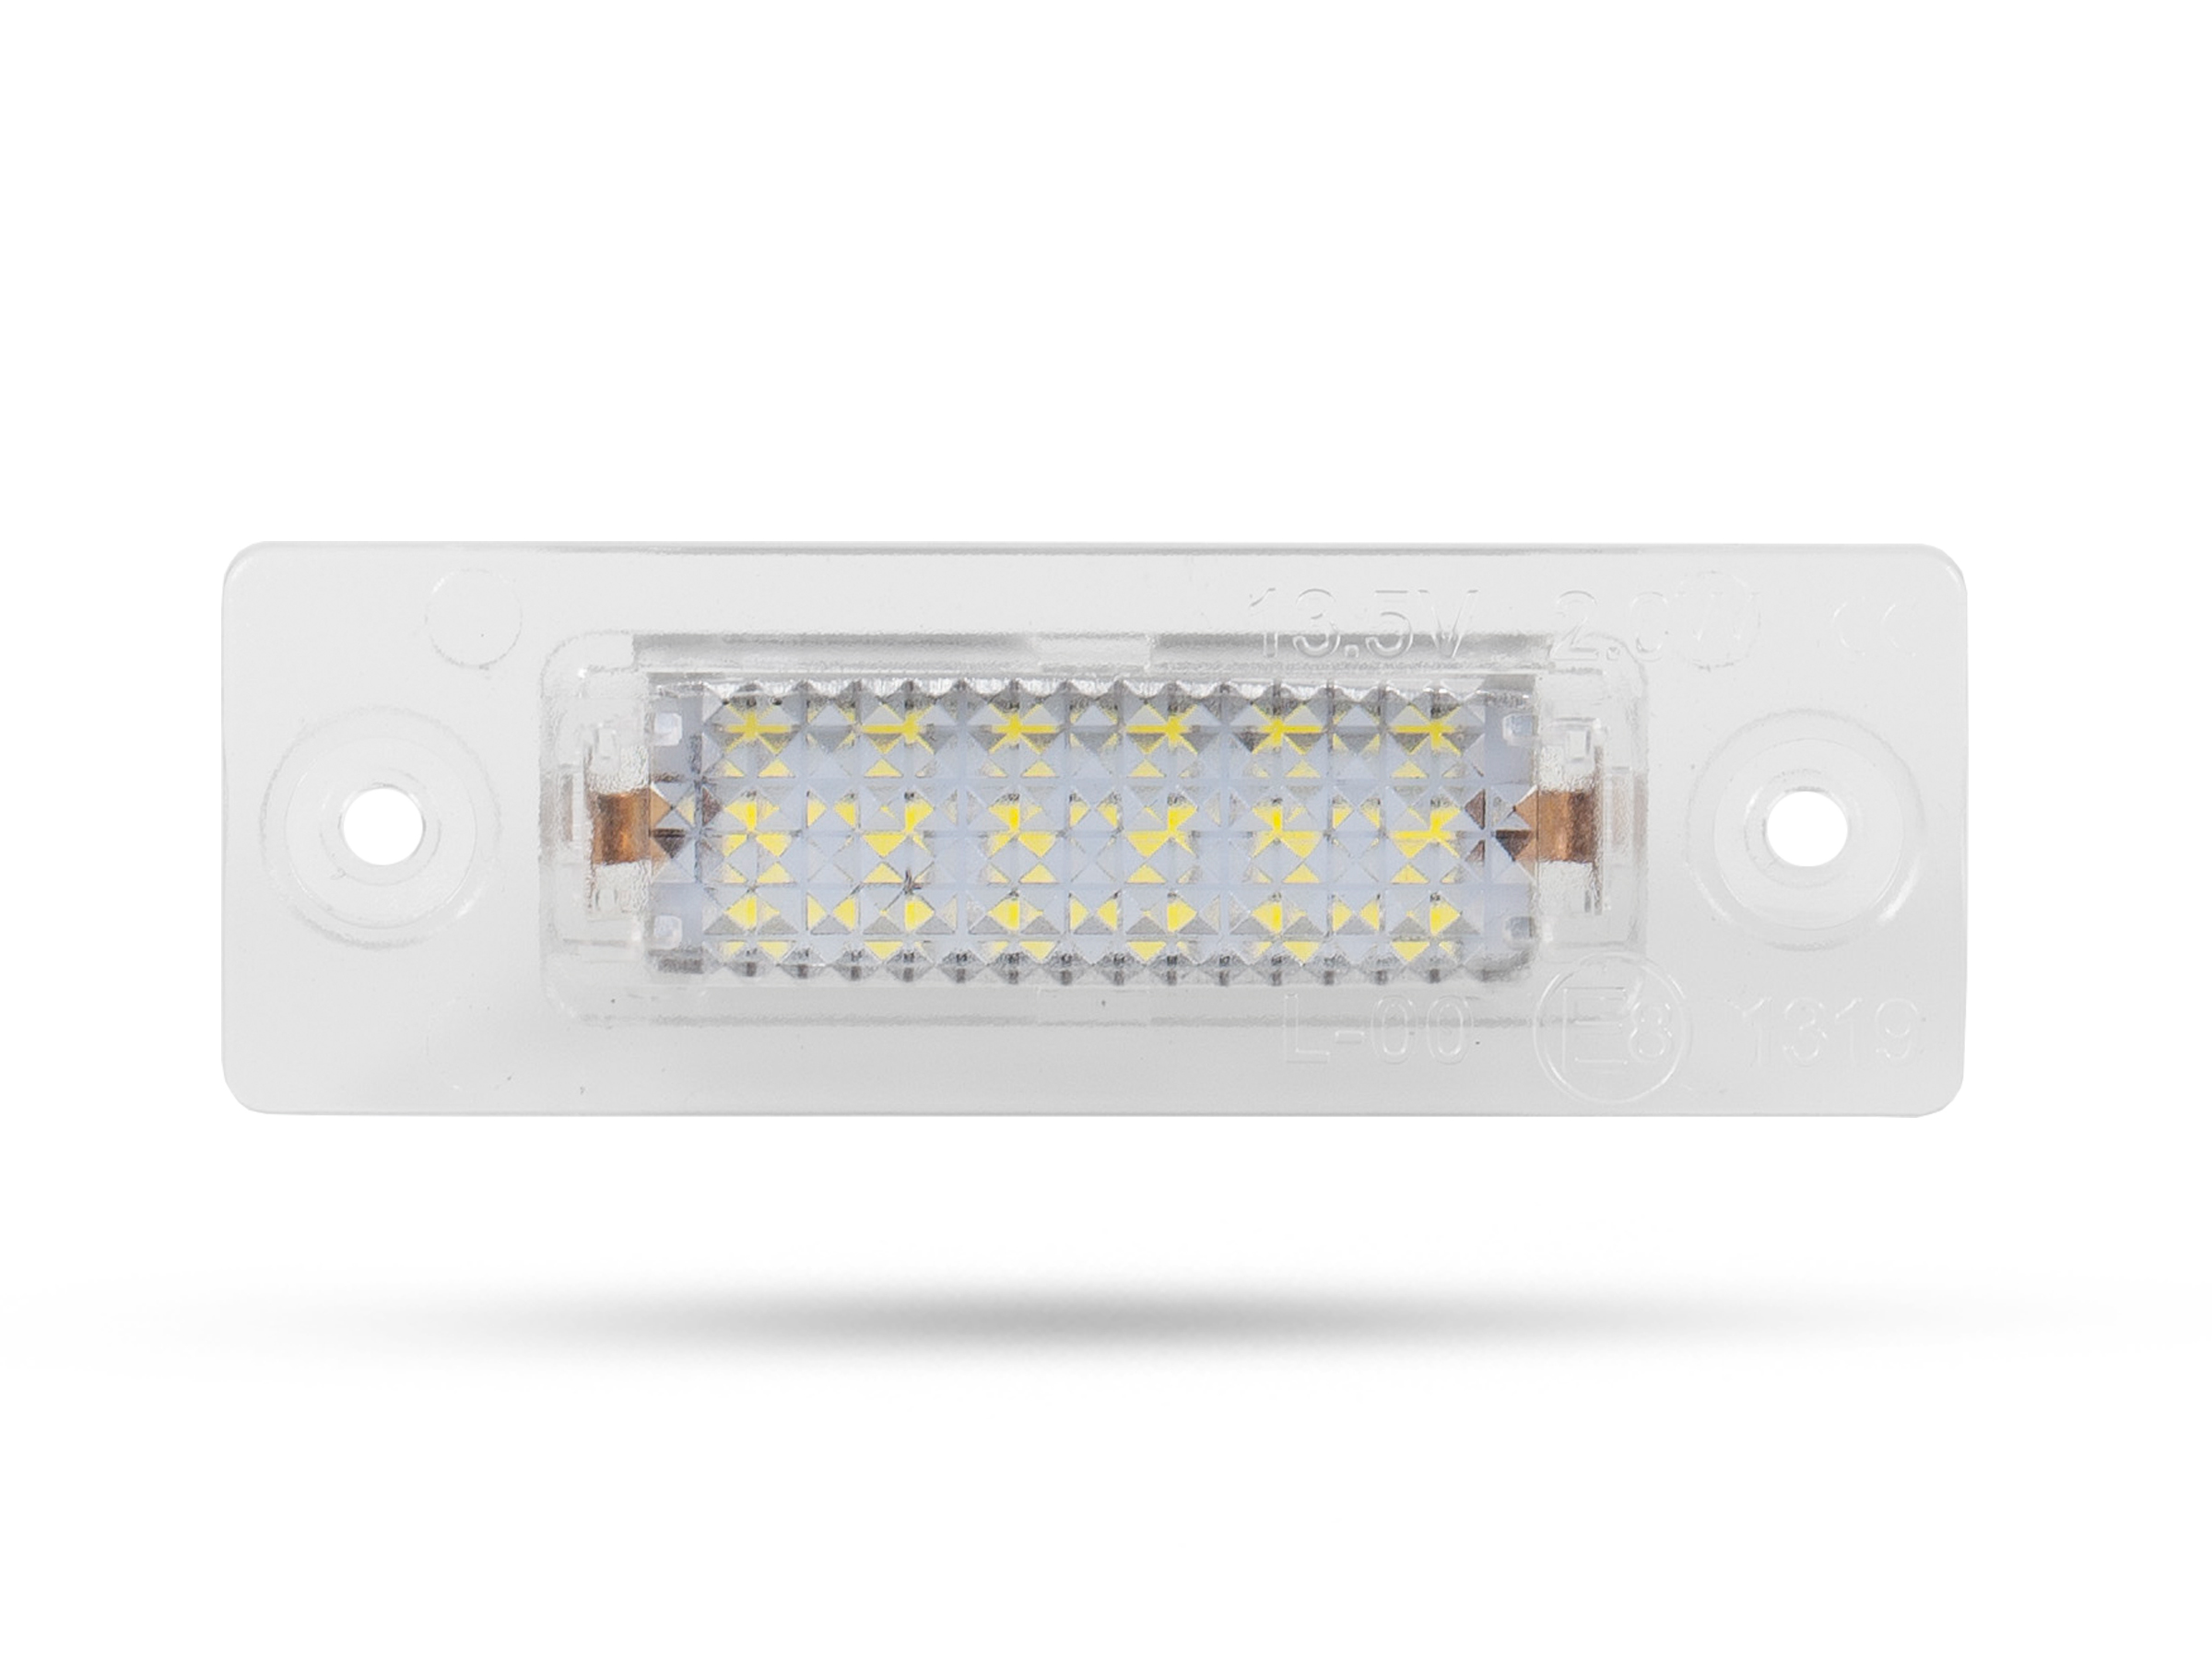 LED Kennzeichenbeleuchtung für VW Caddy Transporter Nummernschildbeleuchtung  Umr